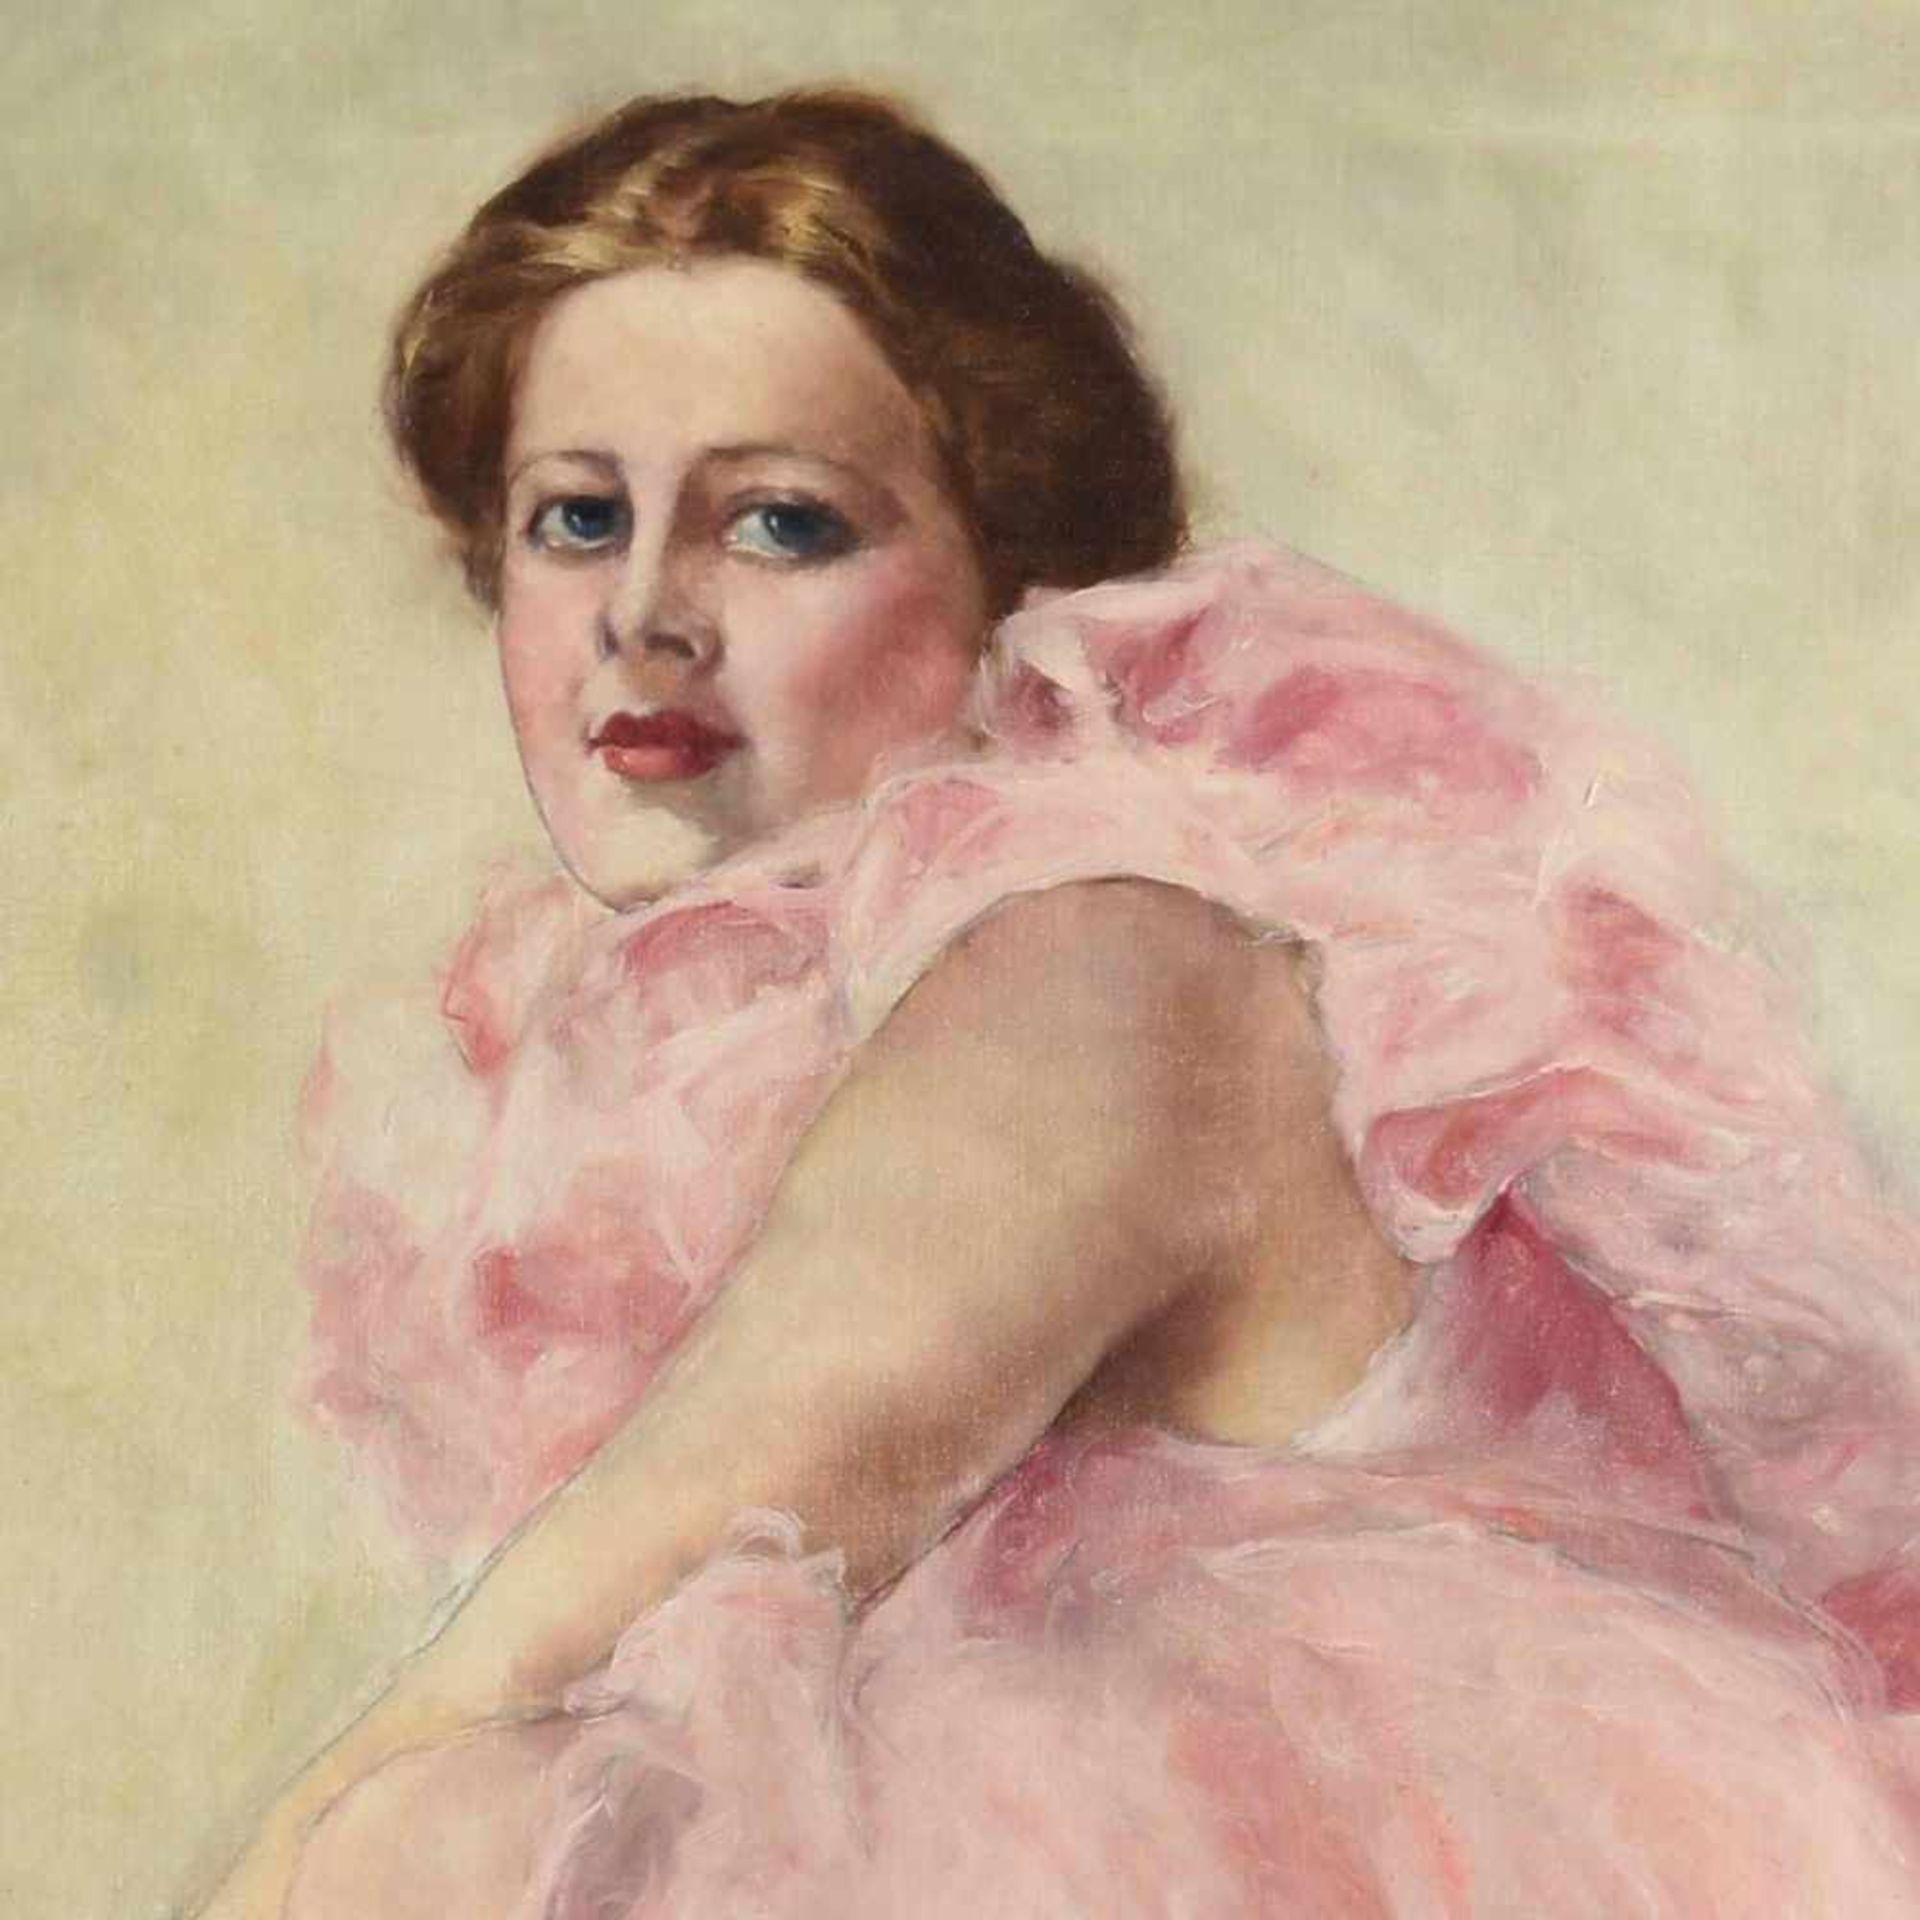 Fried, Pál (1893 Budapest - 1976 New York) Öl/Lwd., Tänzerin im rosafarbenen Kostüm, rechts unten